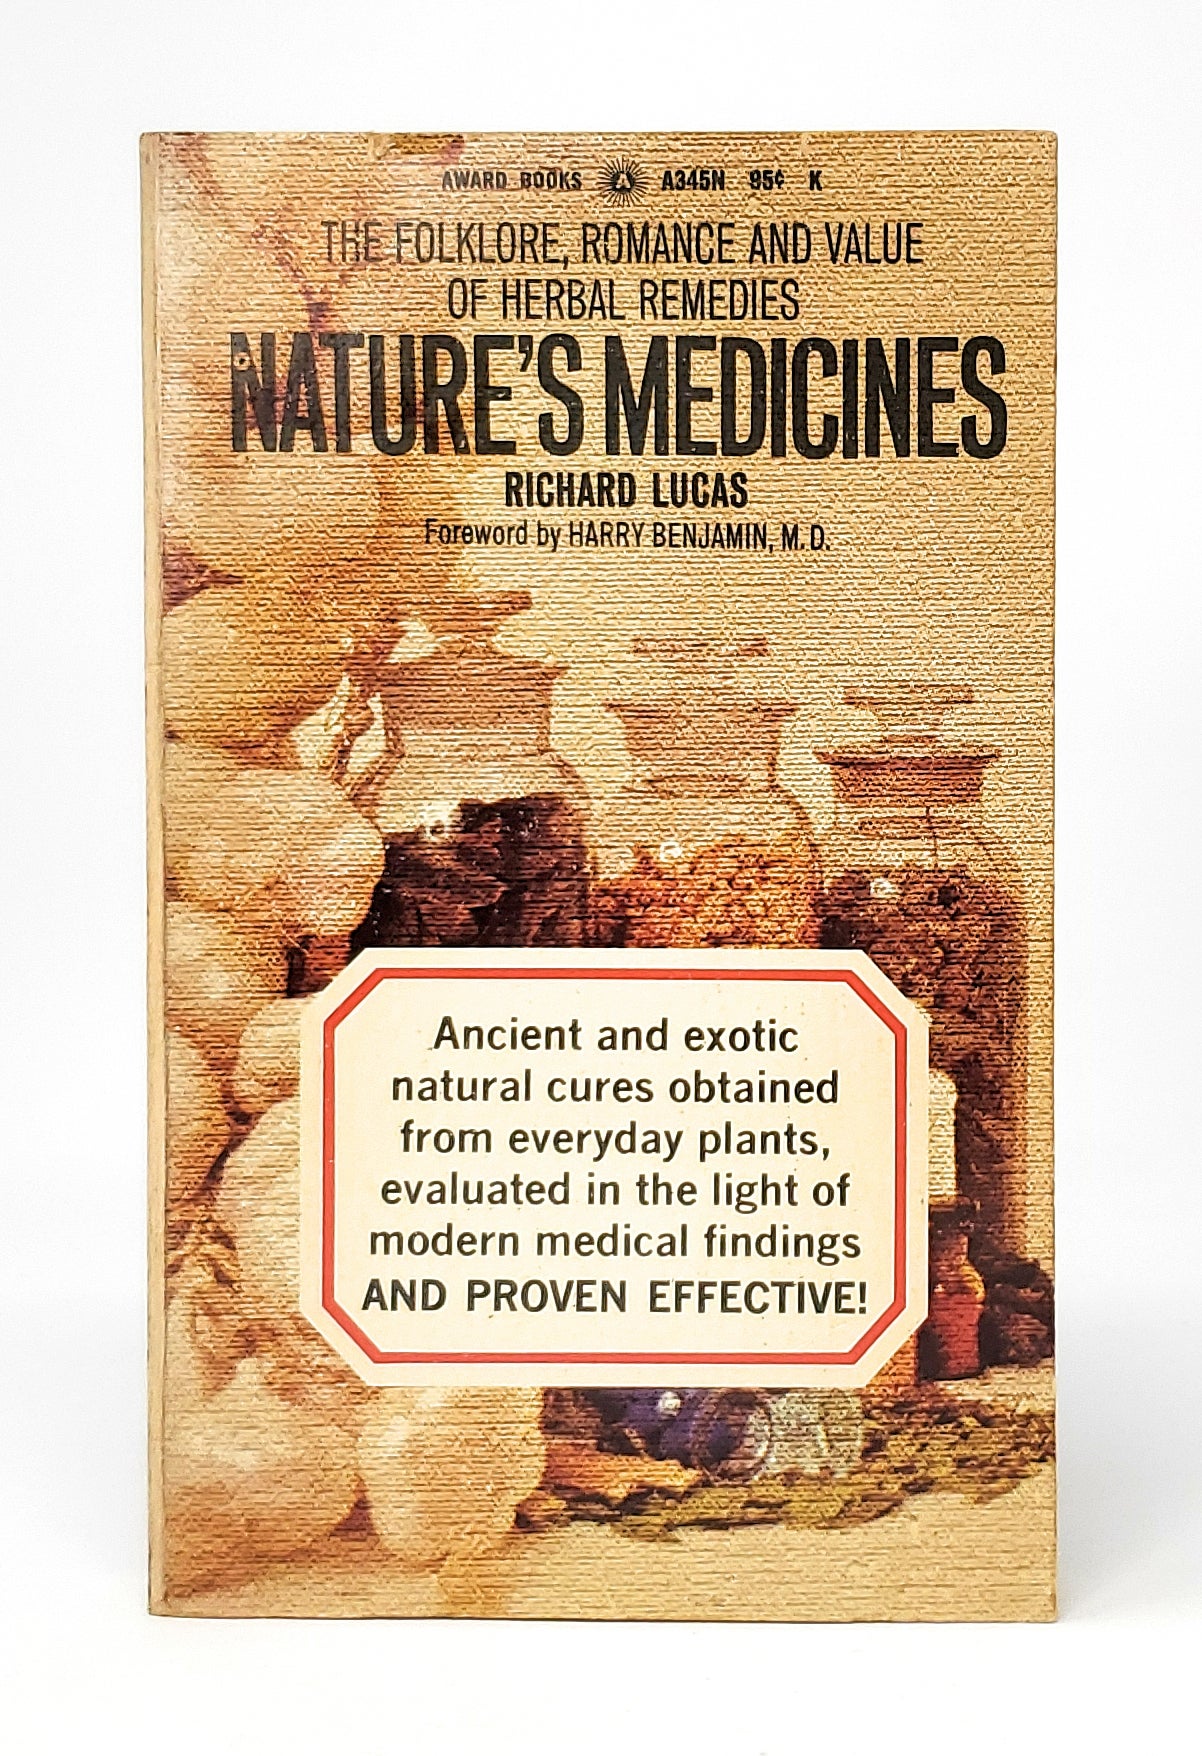 II. History of Herbal Remedies 